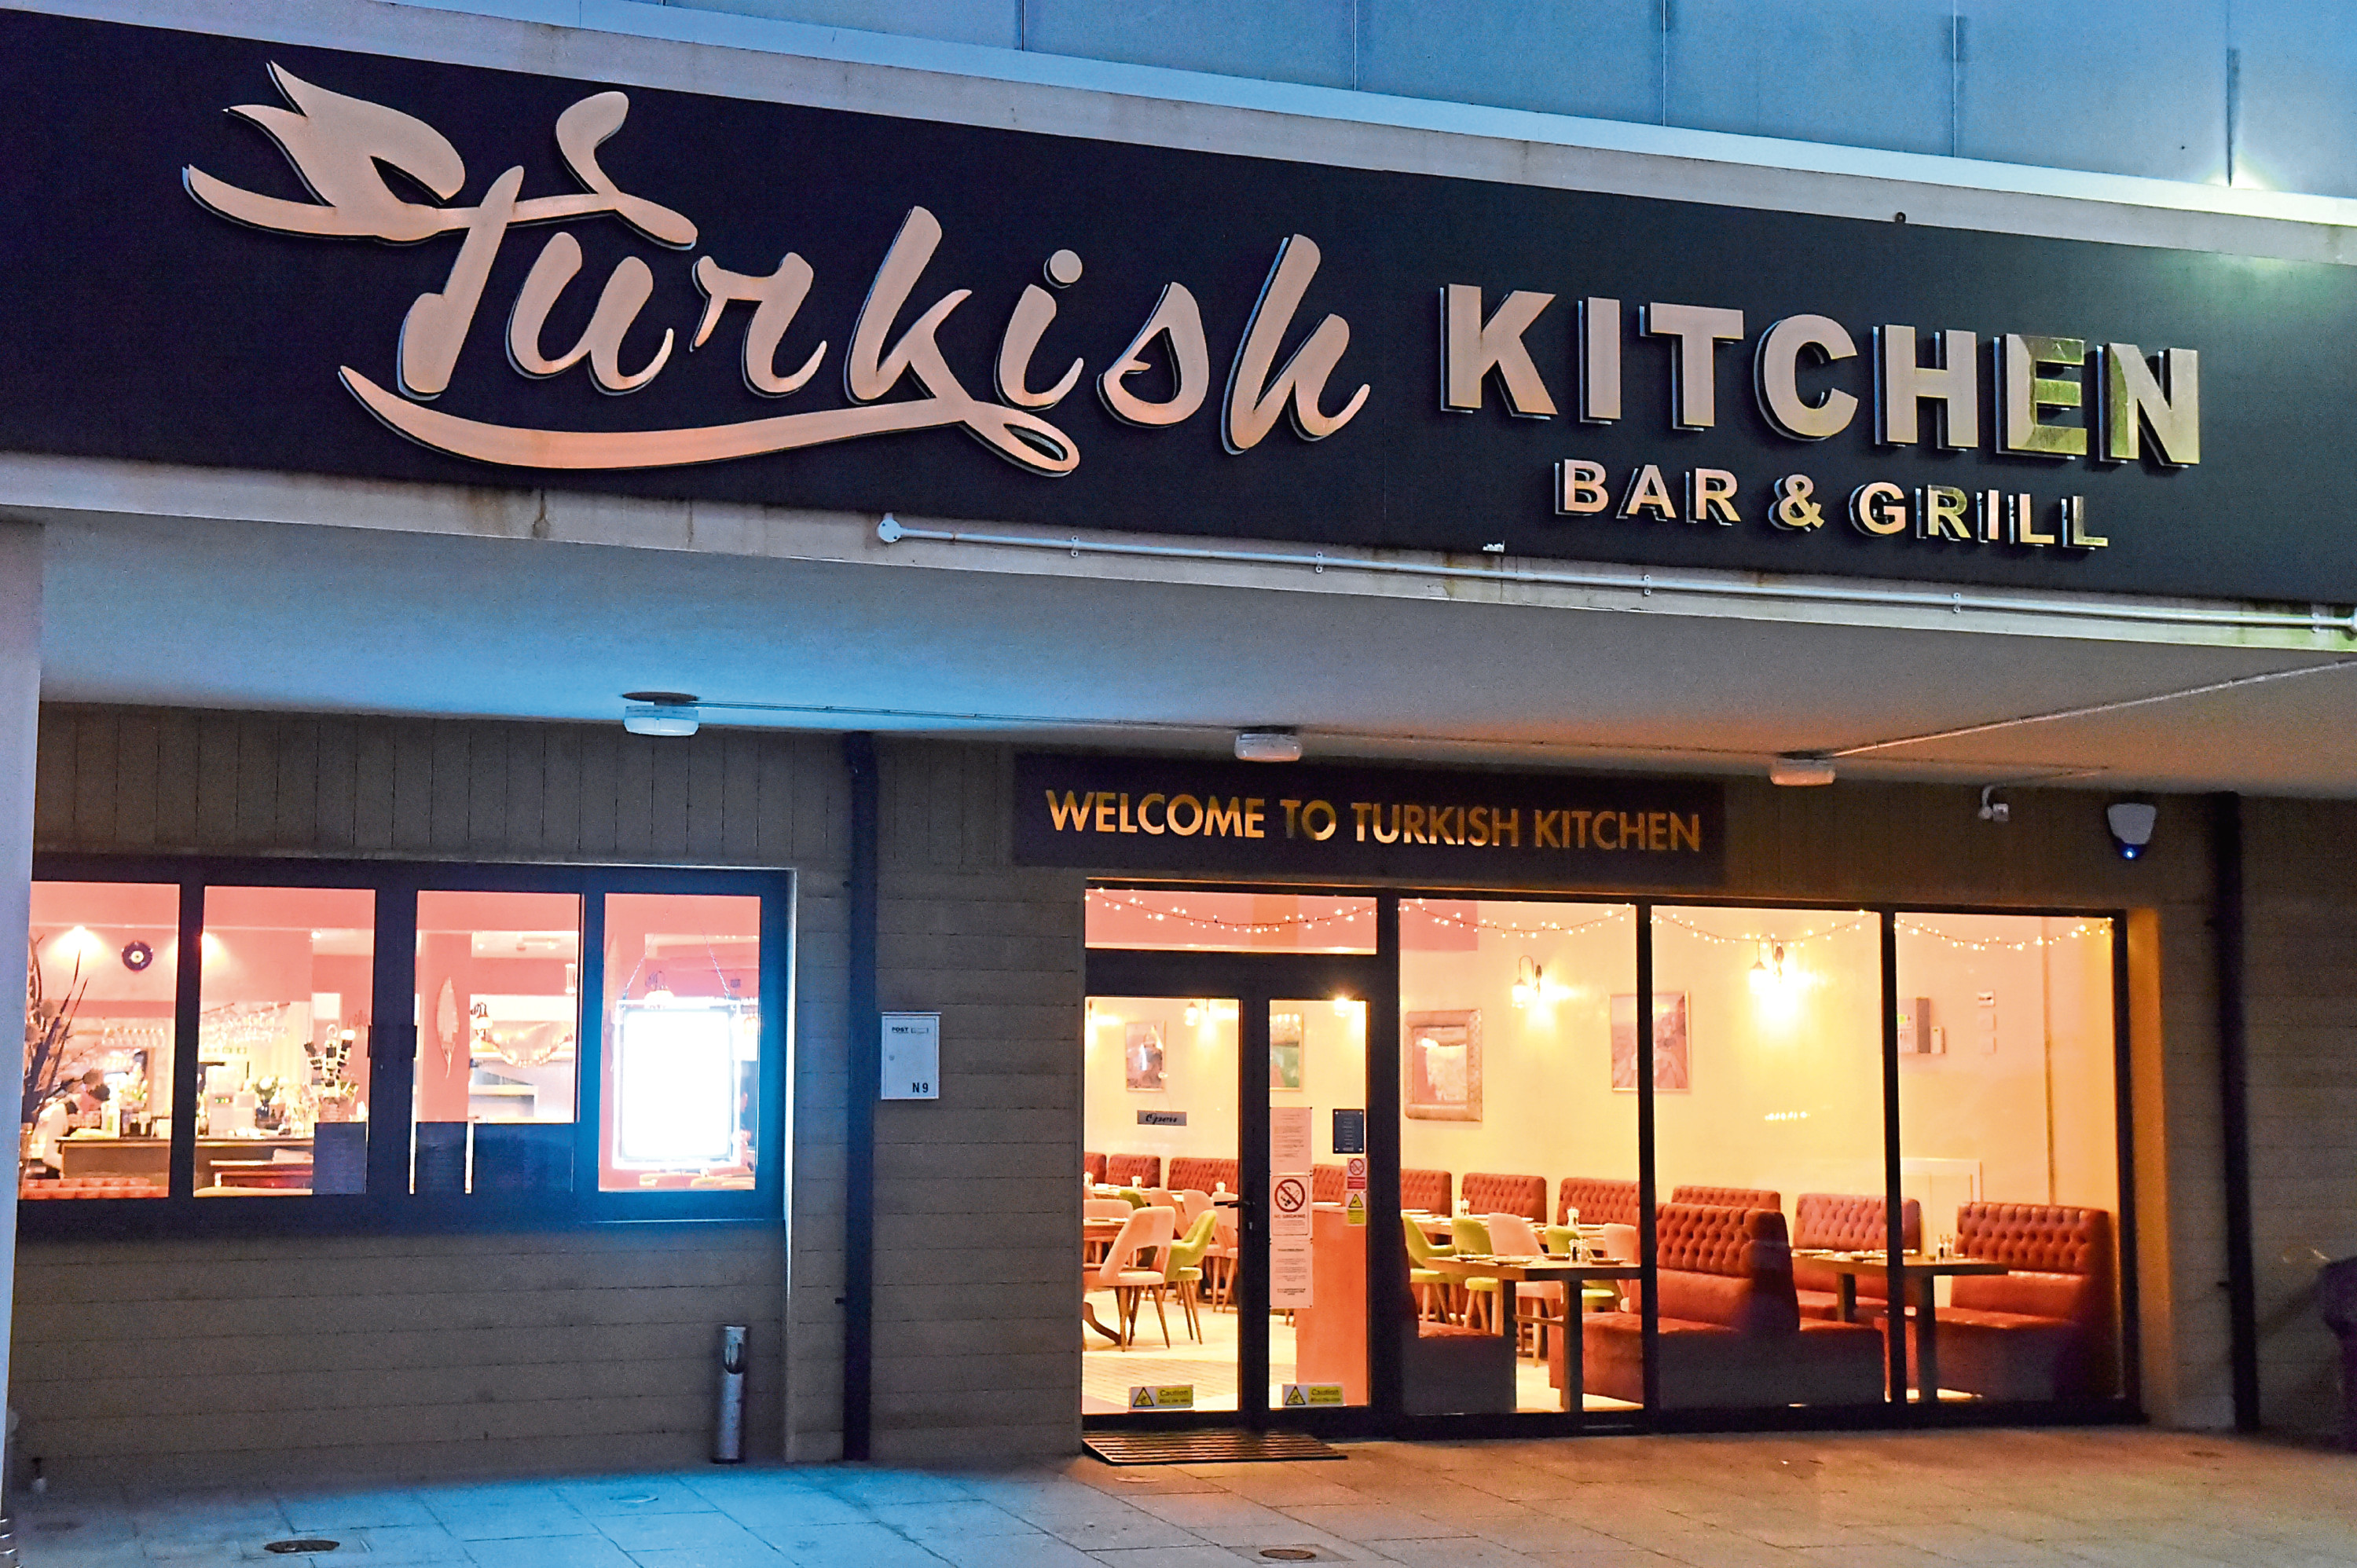 Turkish Kitchen Bar & Grill, Beach Blvd, Esplanade.

Picture by KENNY ELRICK